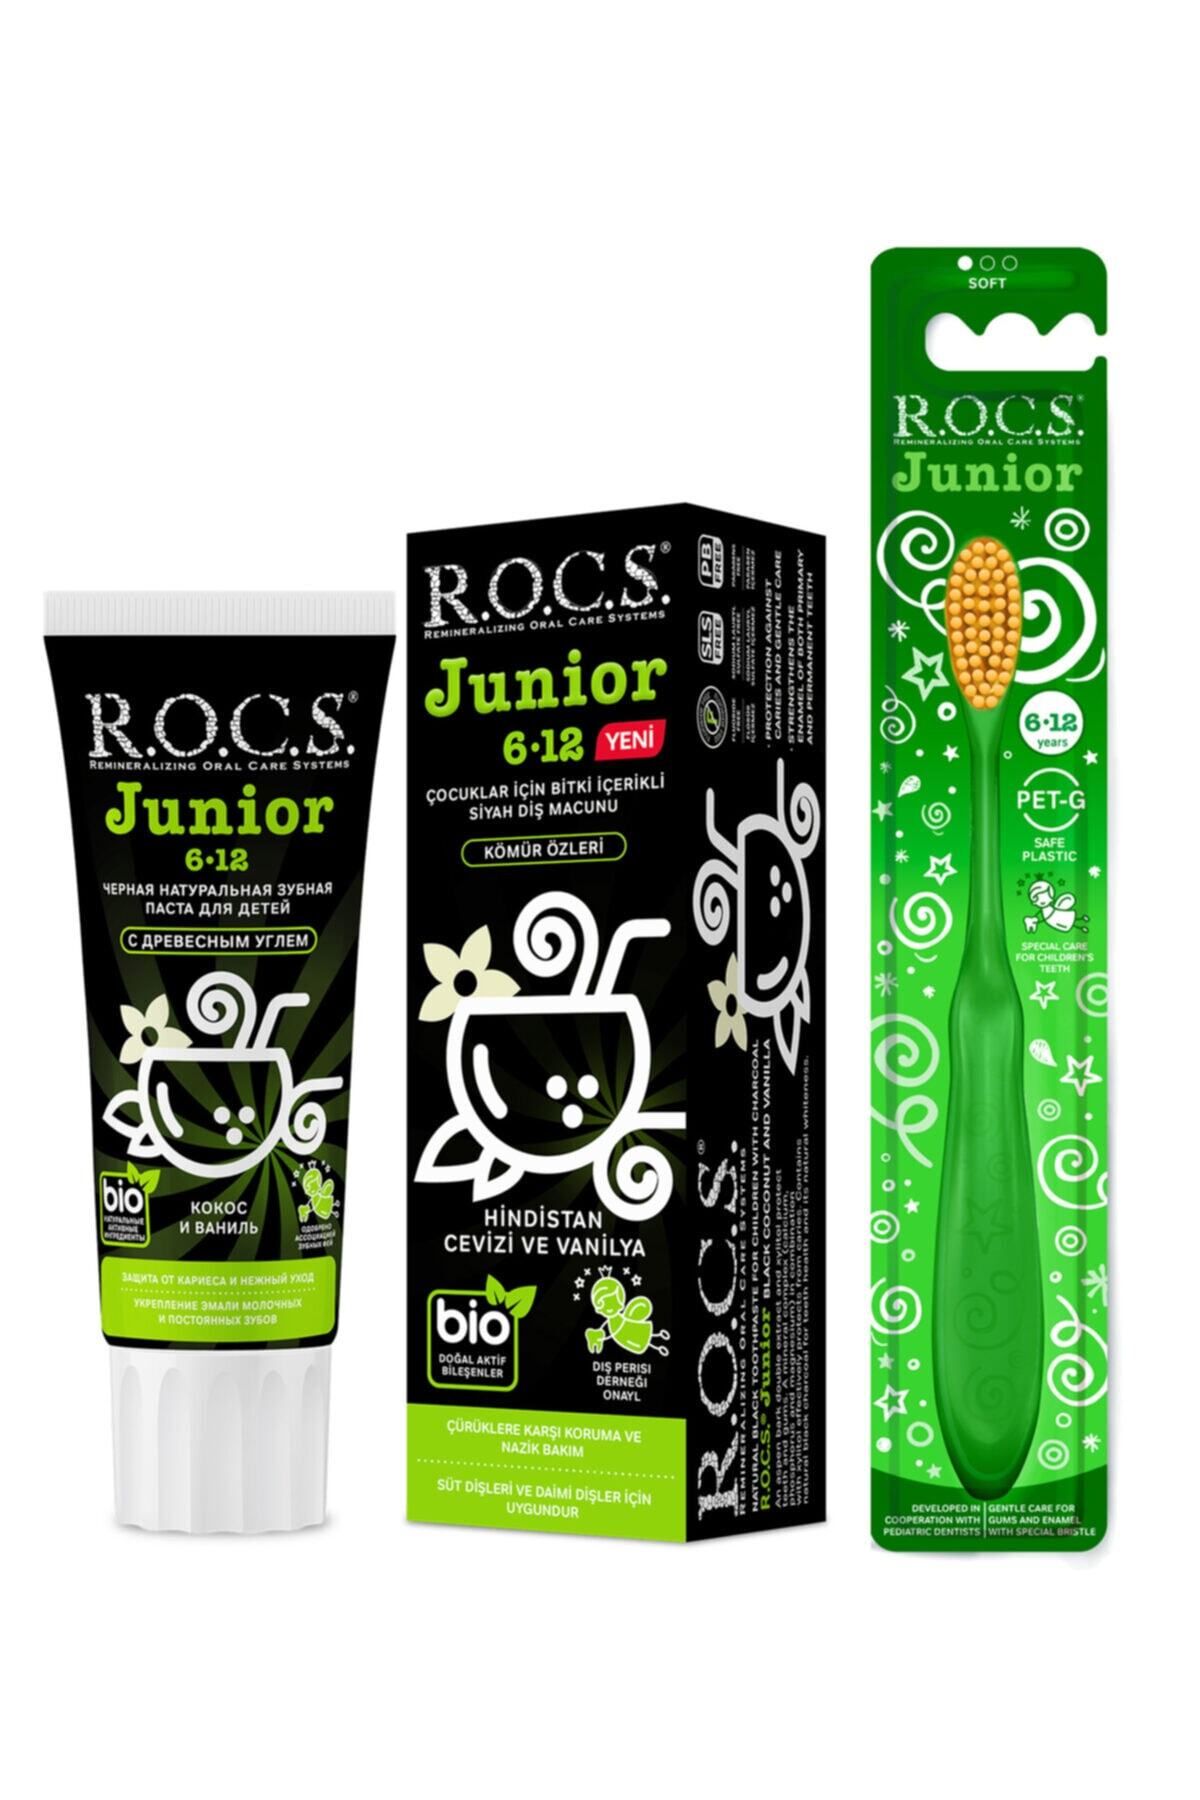 R.O.C.S. Rocs Junıor 6-12 Hindistan Cevizi & Vanilyalı Diş Macunu Ve Diş Fırçası Seti (yeşil)